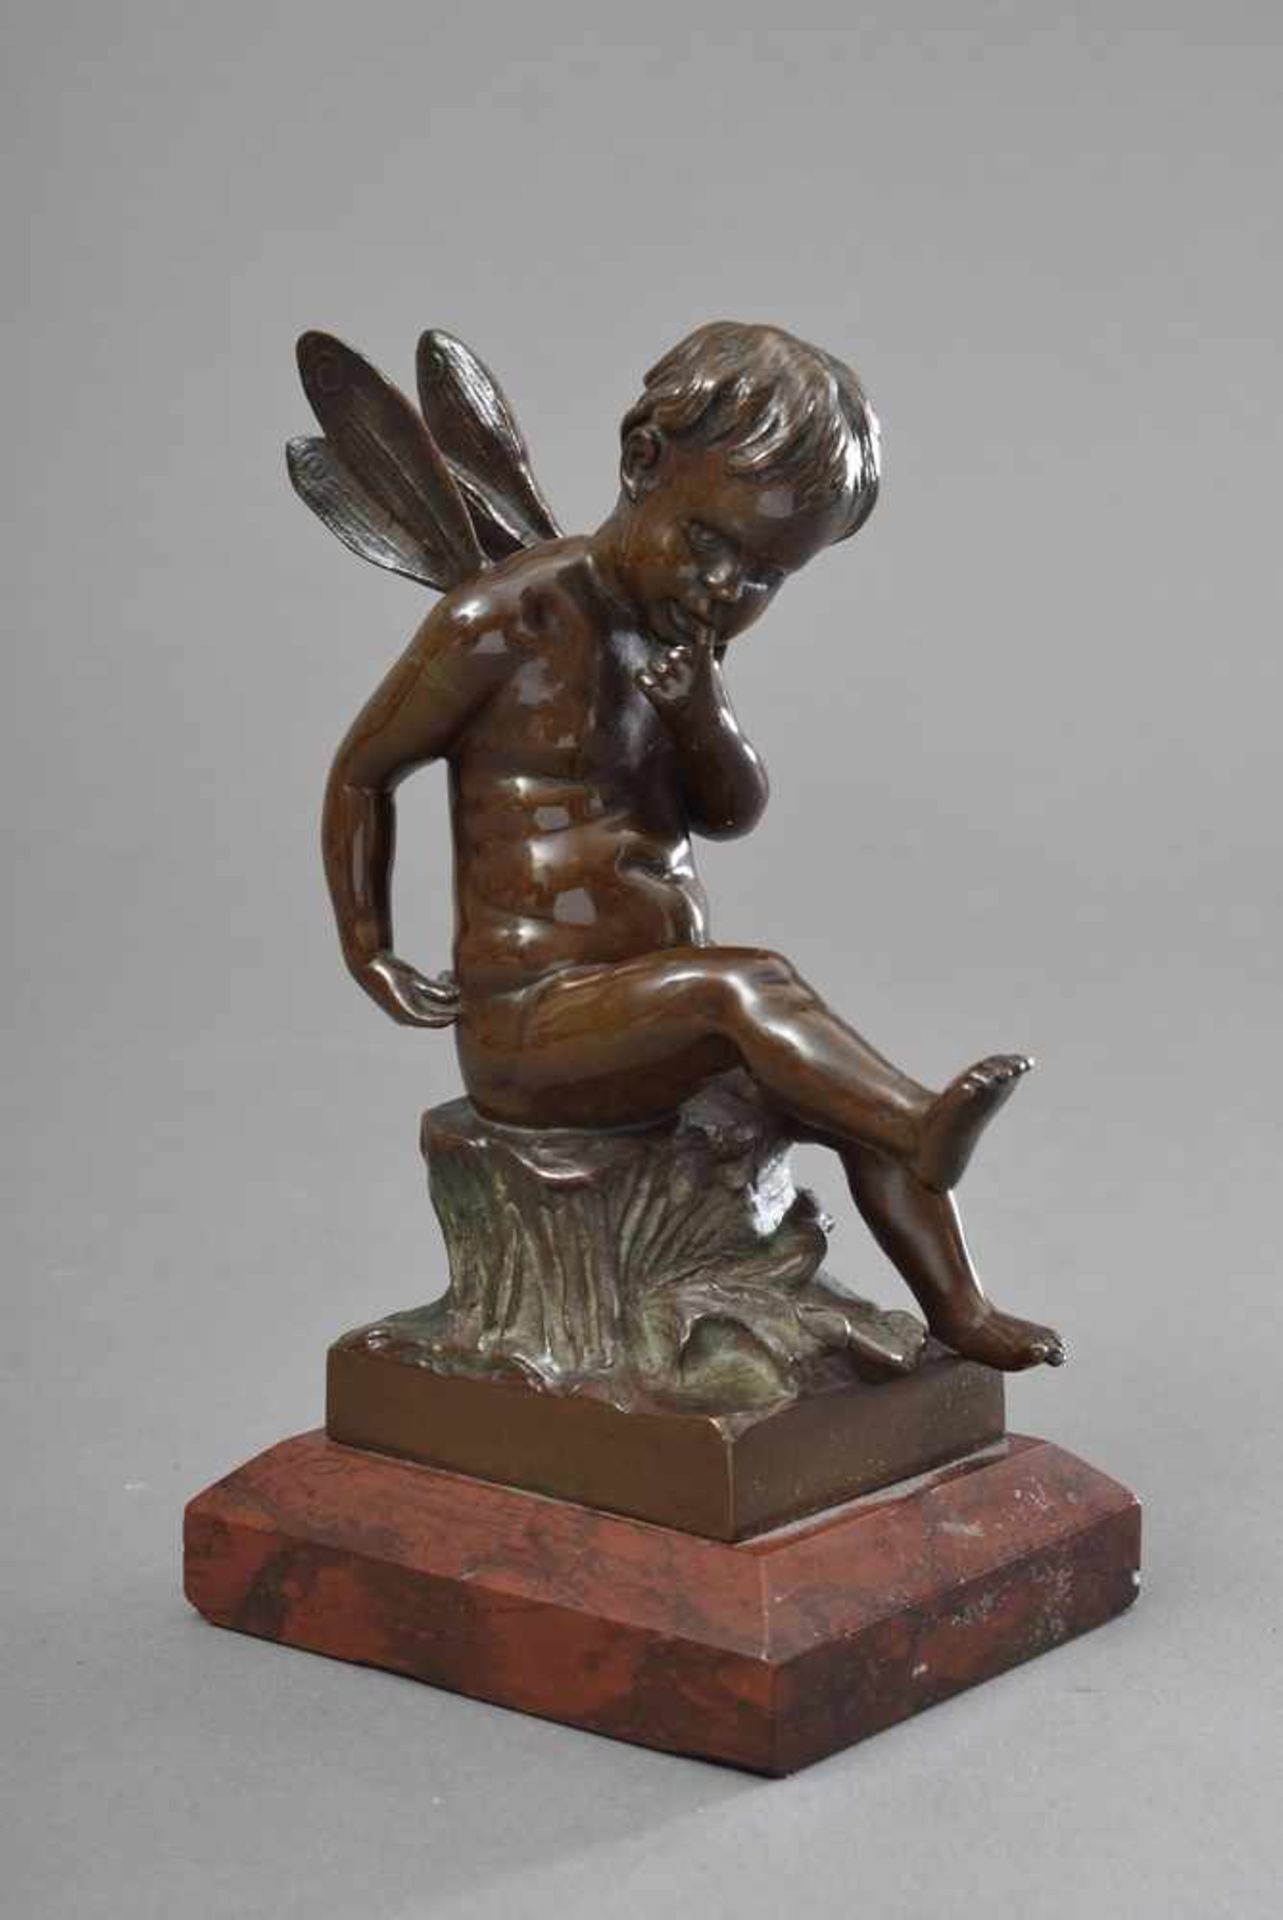 Kleine Bronze "Sitzende Amourette mit Insektenflügeln" auf rotem Steinsockel, Gießereisignet "H.